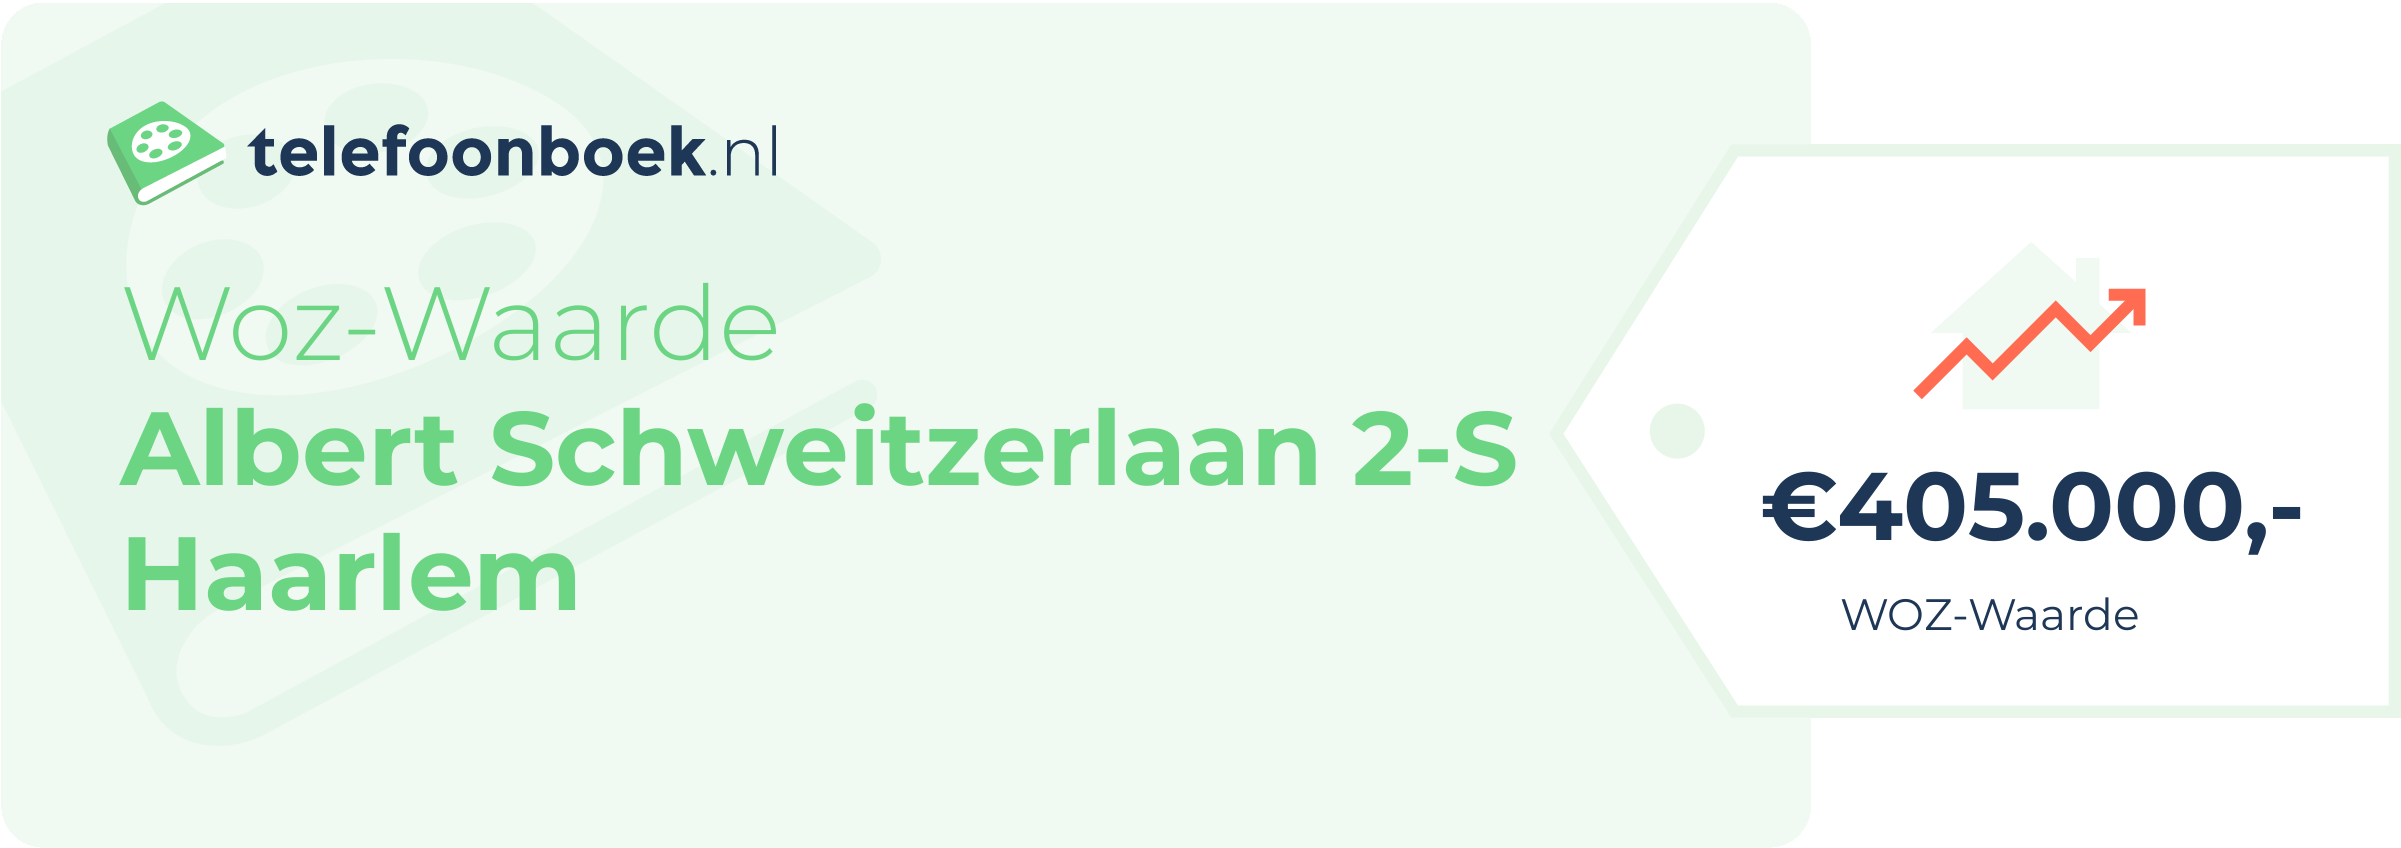 WOZ-waarde Albert Schweitzerlaan 2-S Haarlem